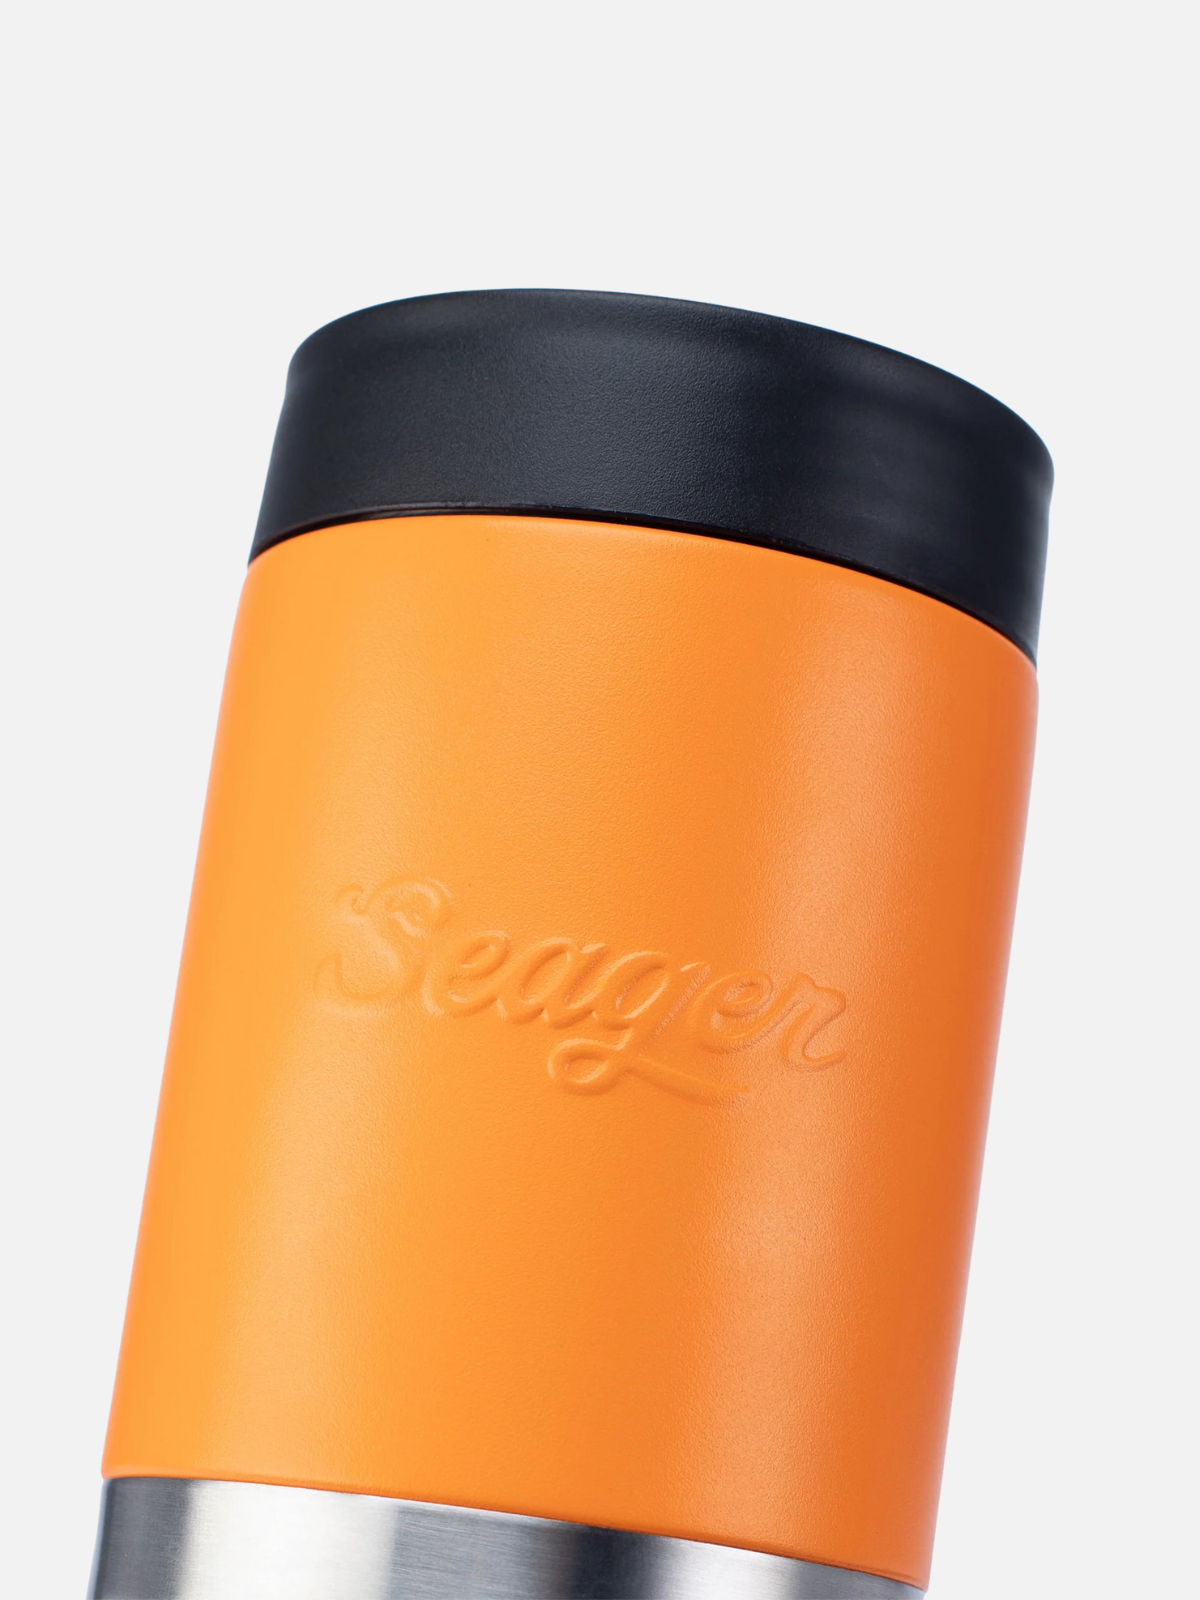 Seager Can Armor Blaze Orange Beer Koozie Yeti Drink Cooler Kempt Mens Shop Athens UGA